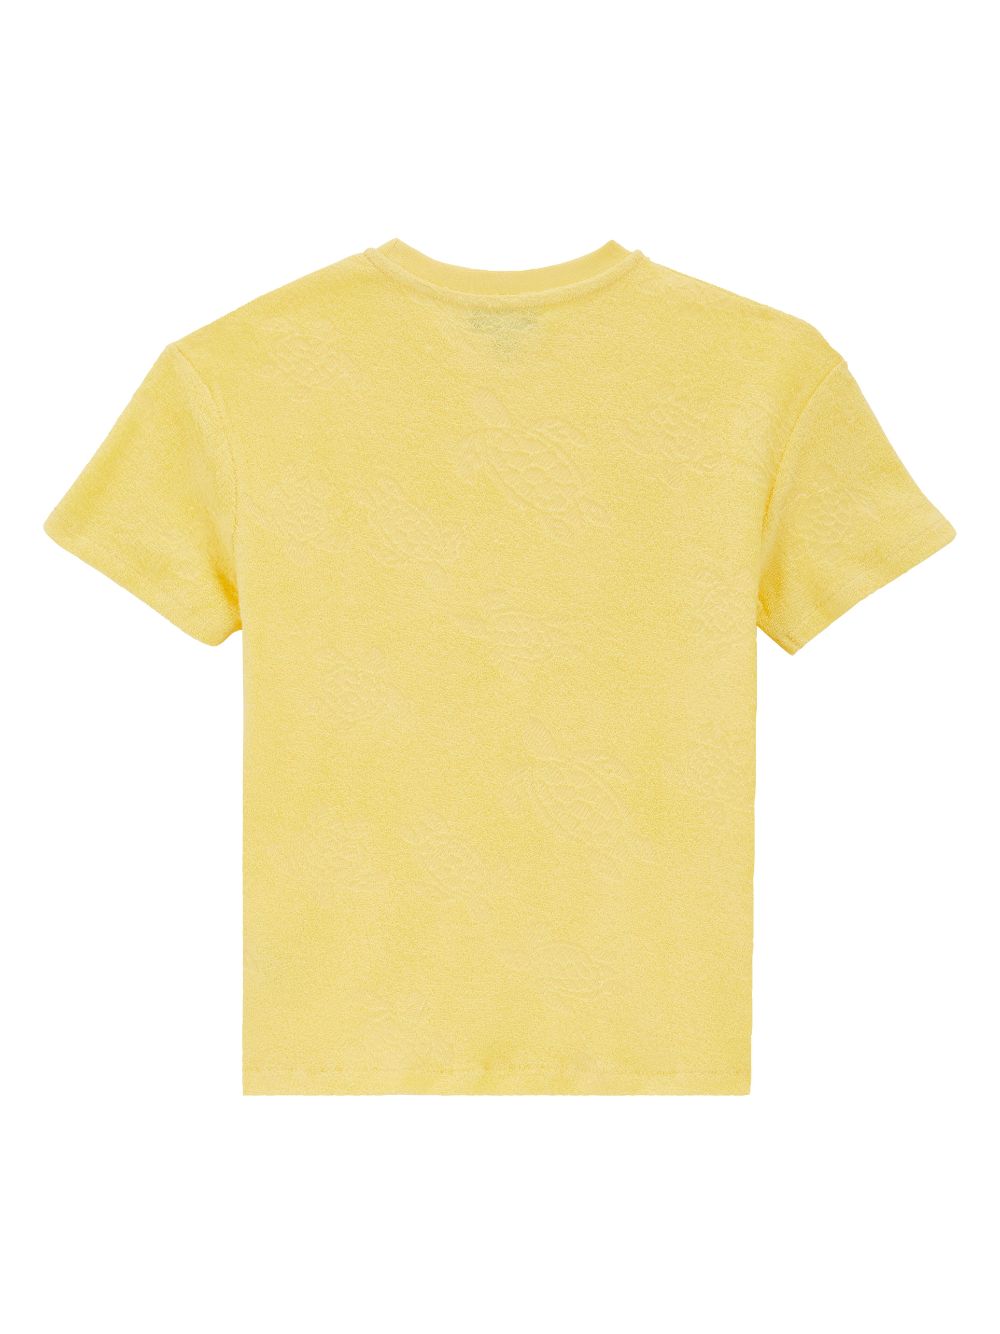 T-shirt gialla bambina